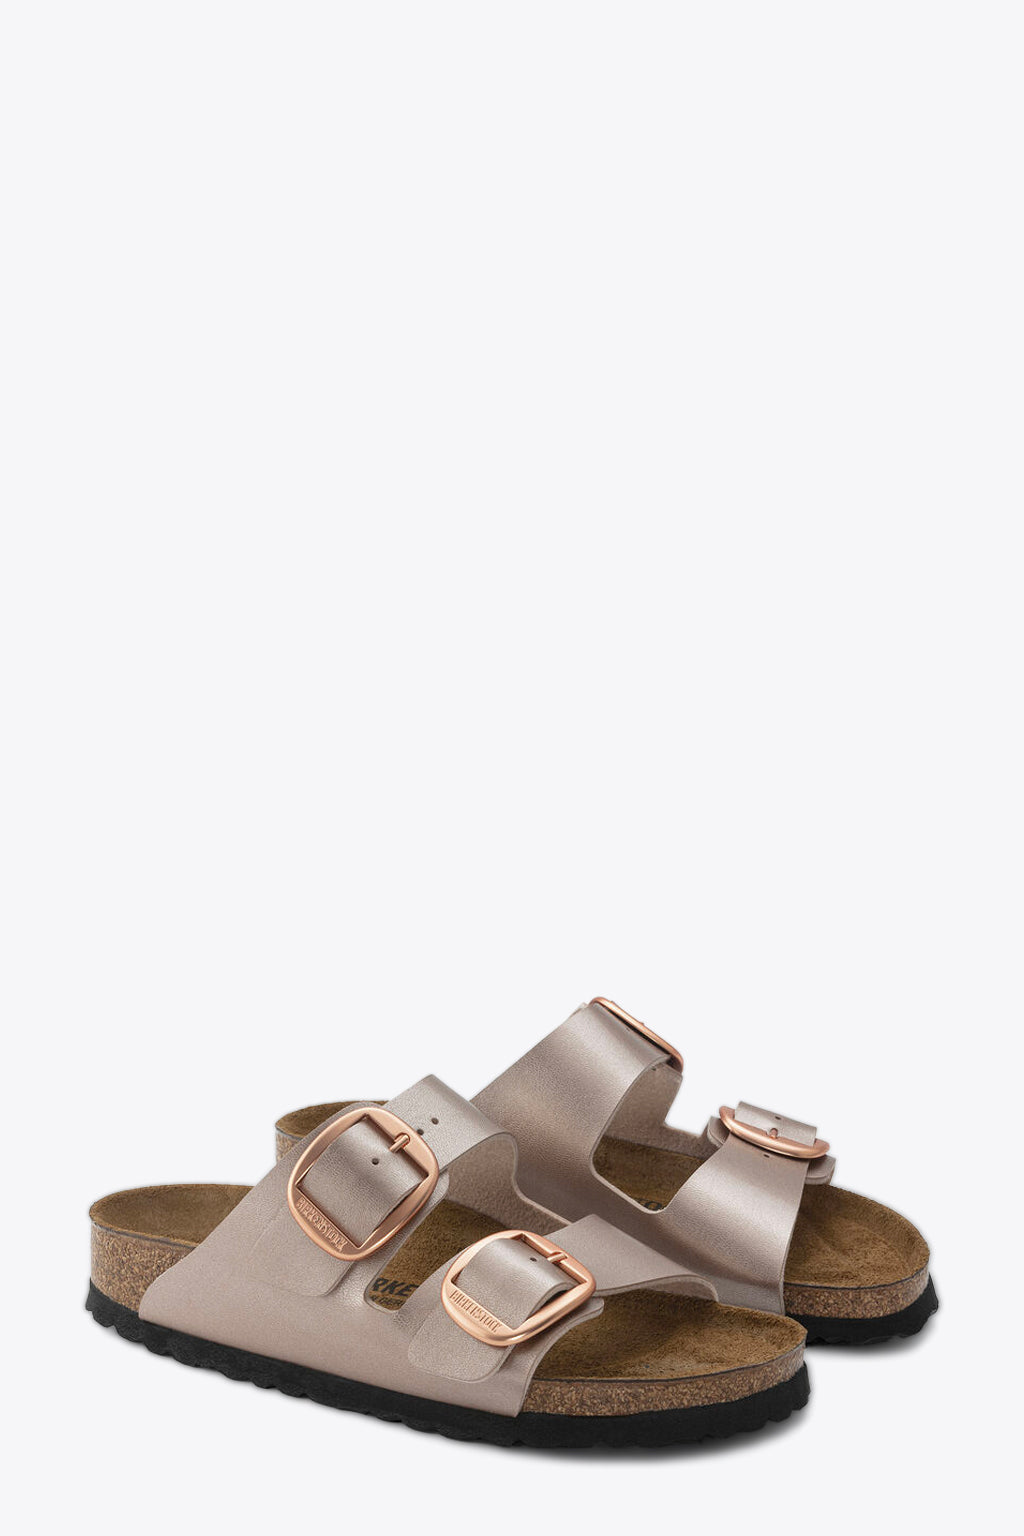 alt-image__Metallic-copper-leather-sandal---Arizona-big-buckle